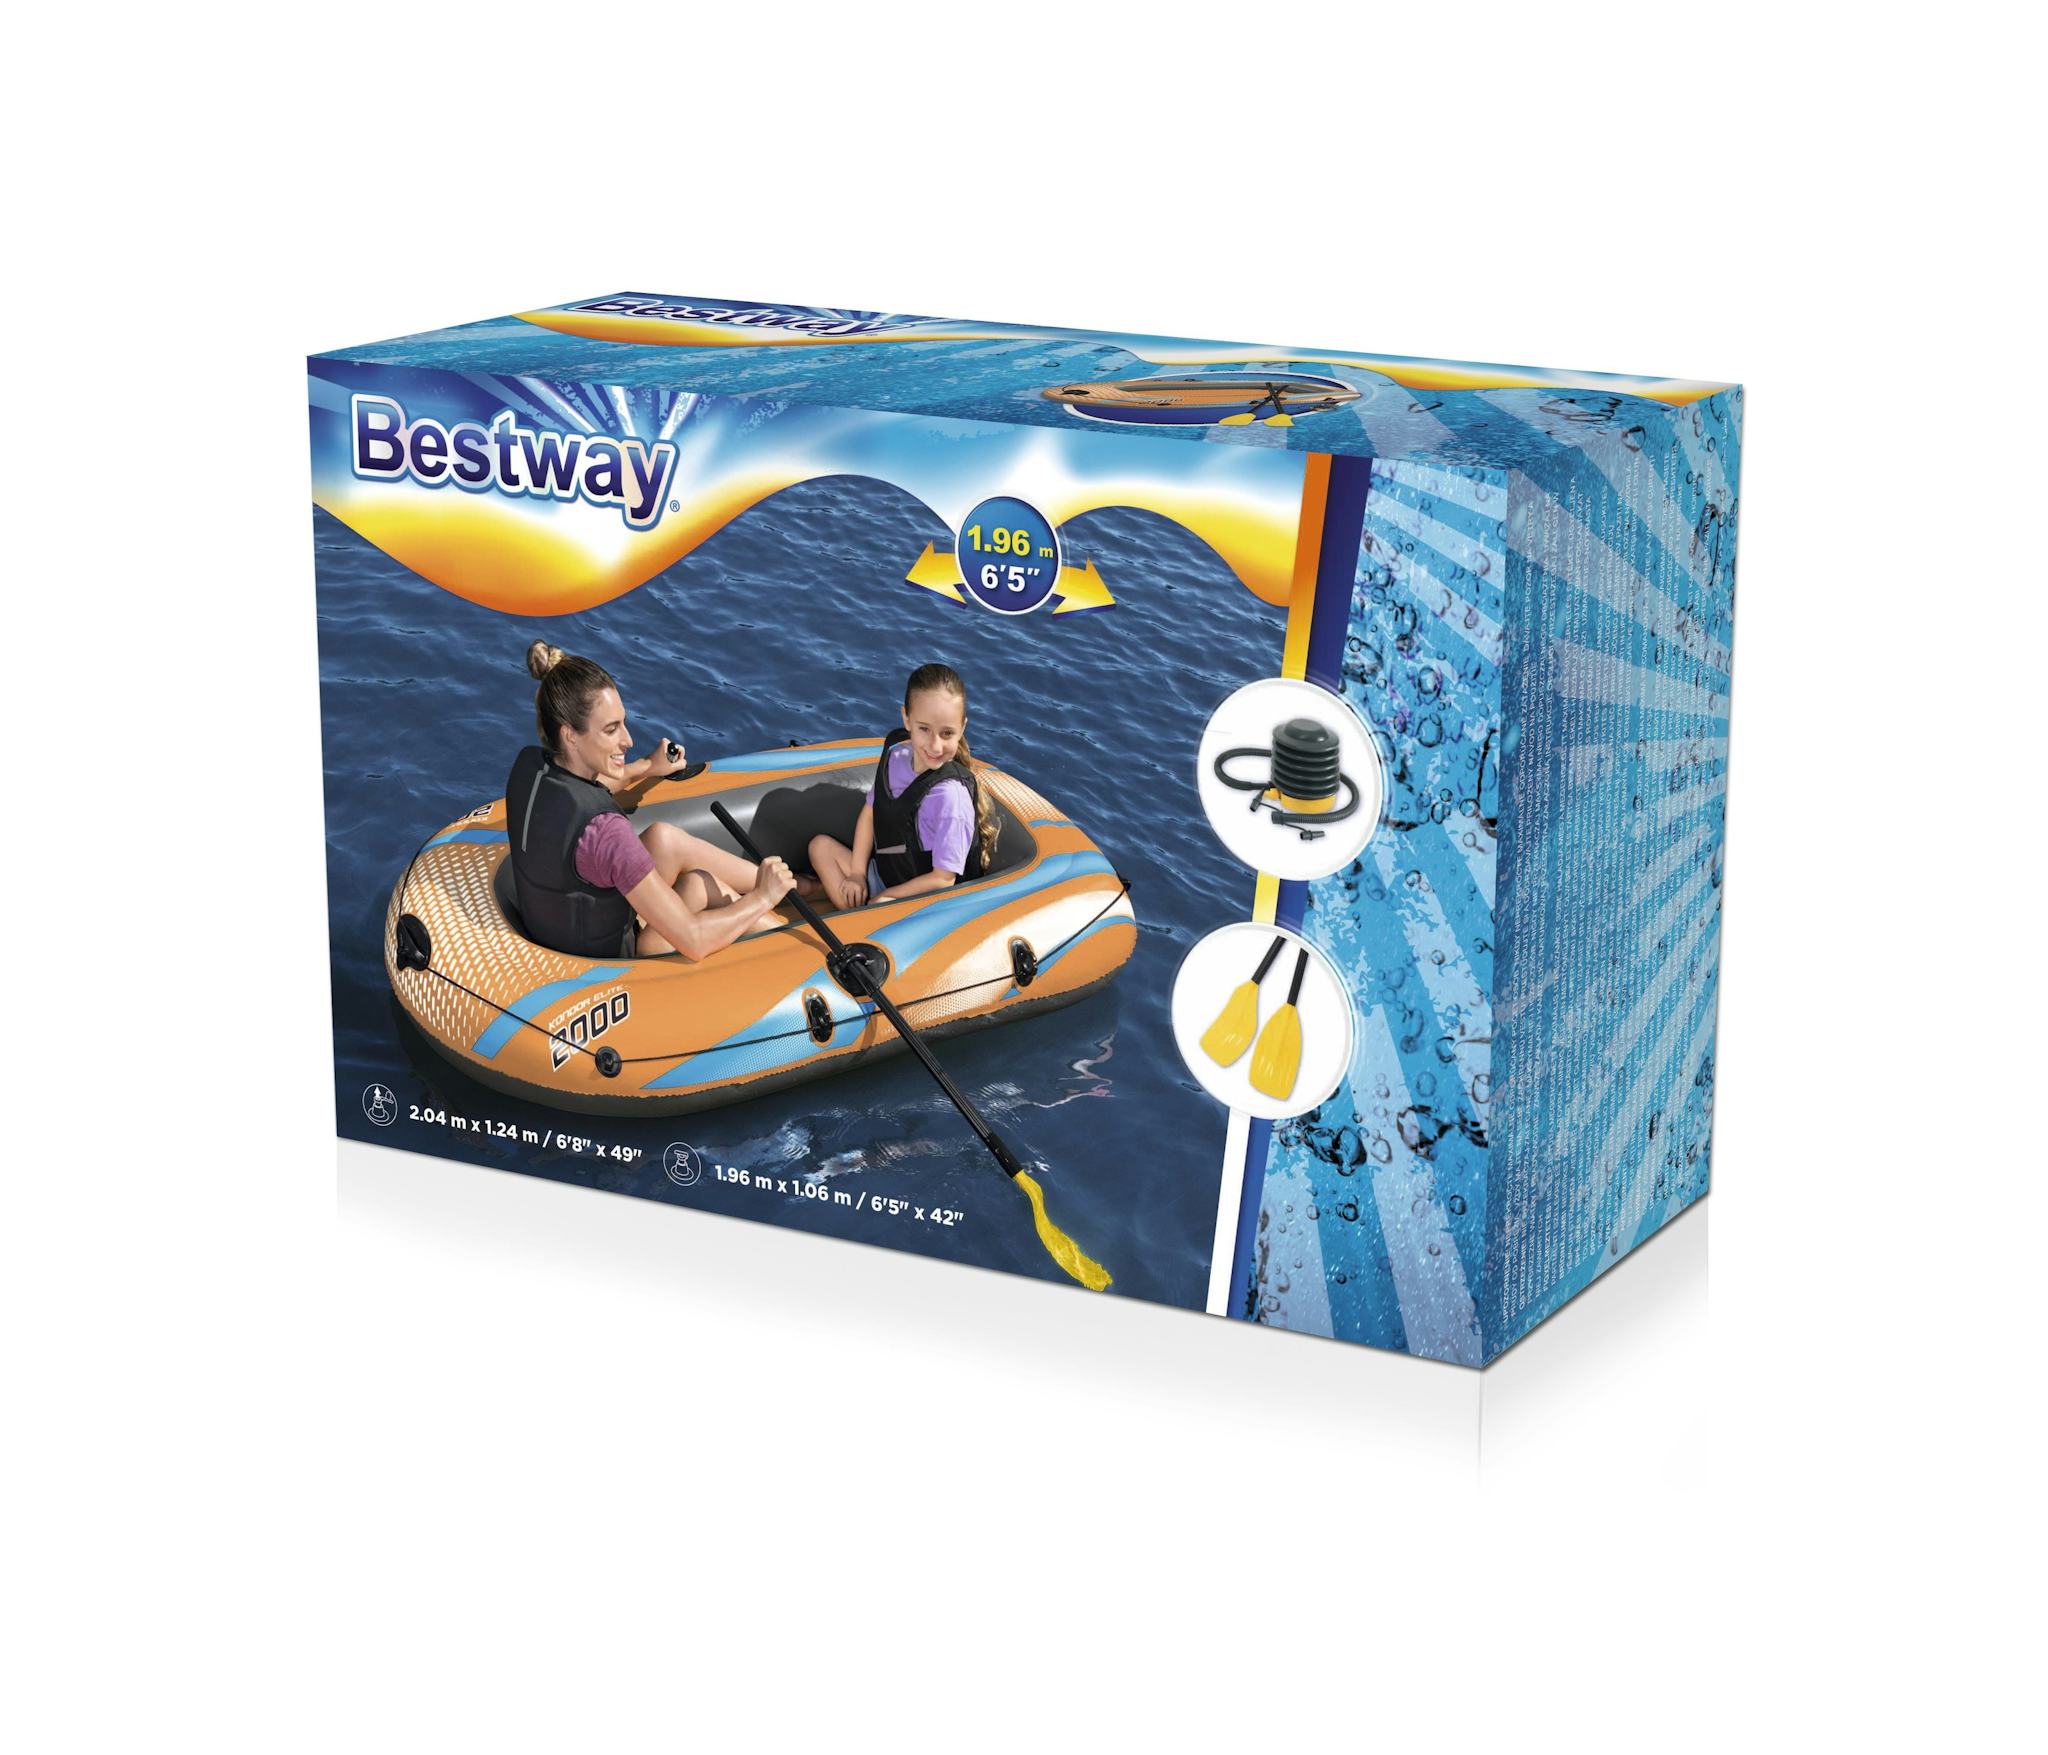 Sports d'eau Bateau gonflable Kondor Elite™ 2000 raft set, 196 x 106 cm, 1 adulte+1enfant, 120kg max, pompe à pied et 2 pagaies Bestway 24